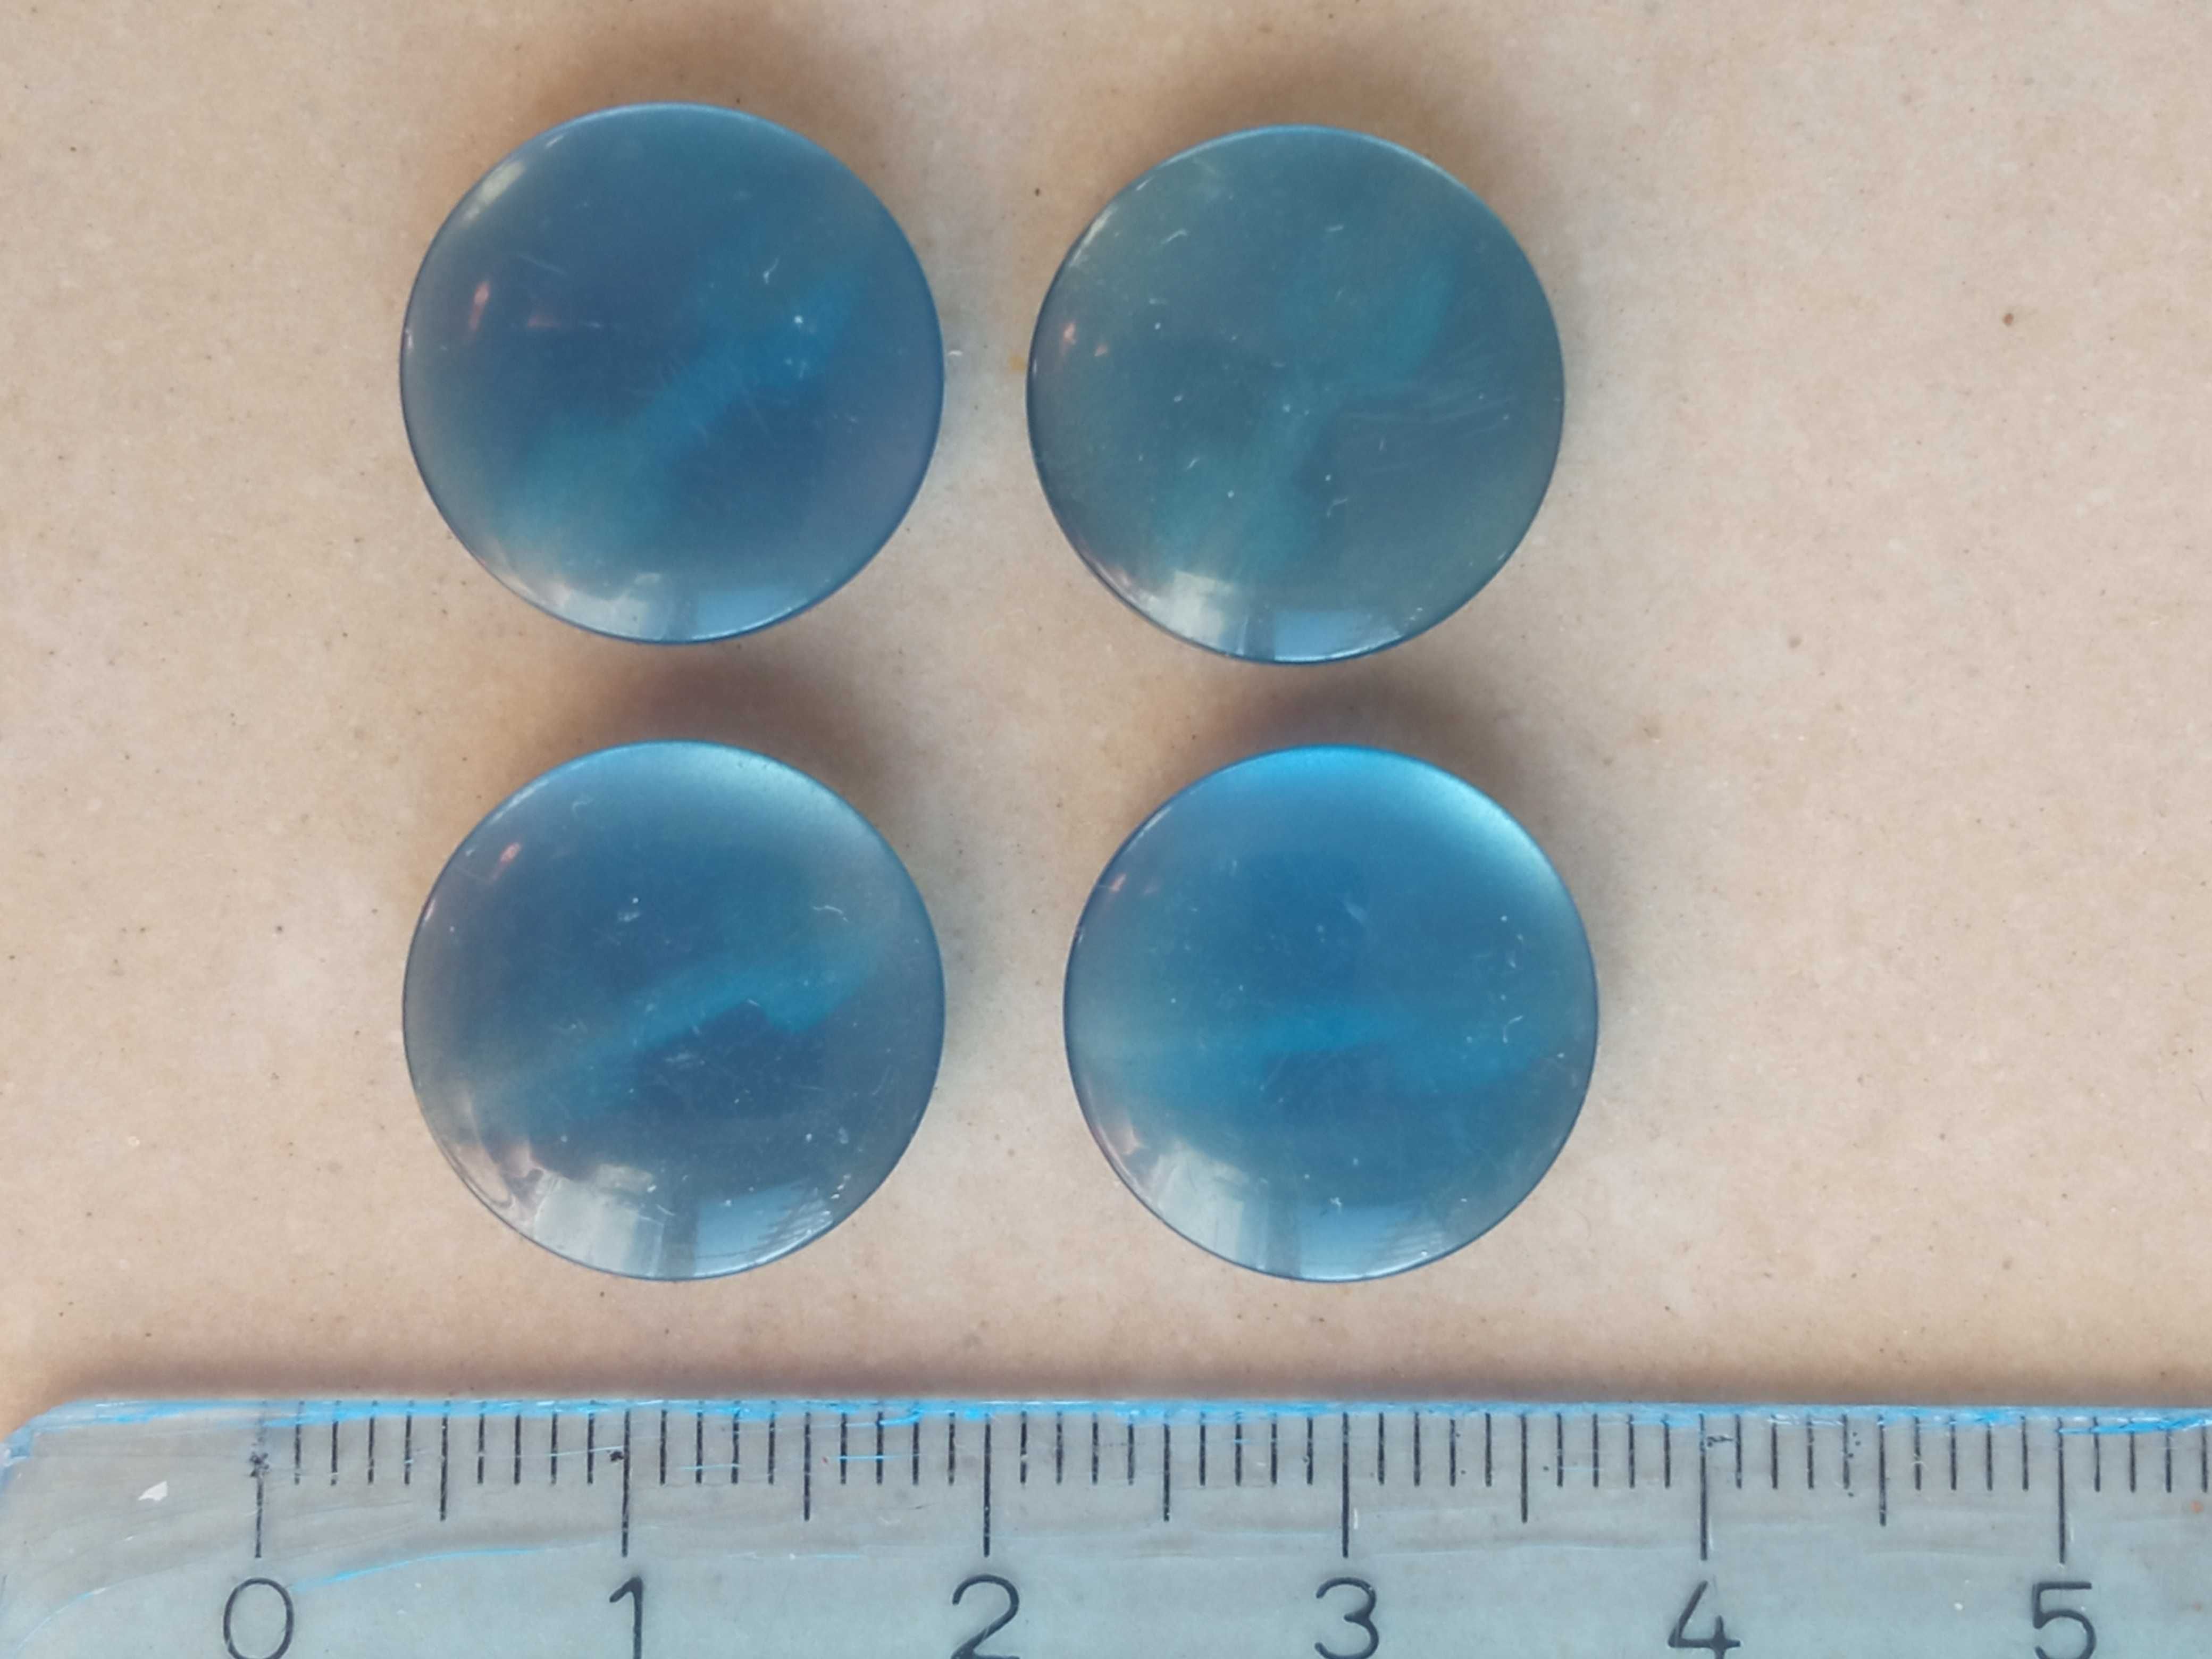 Guziki 4 szt dwie dziurki niebieskie średnica 1,5 cm Guzik niebieski